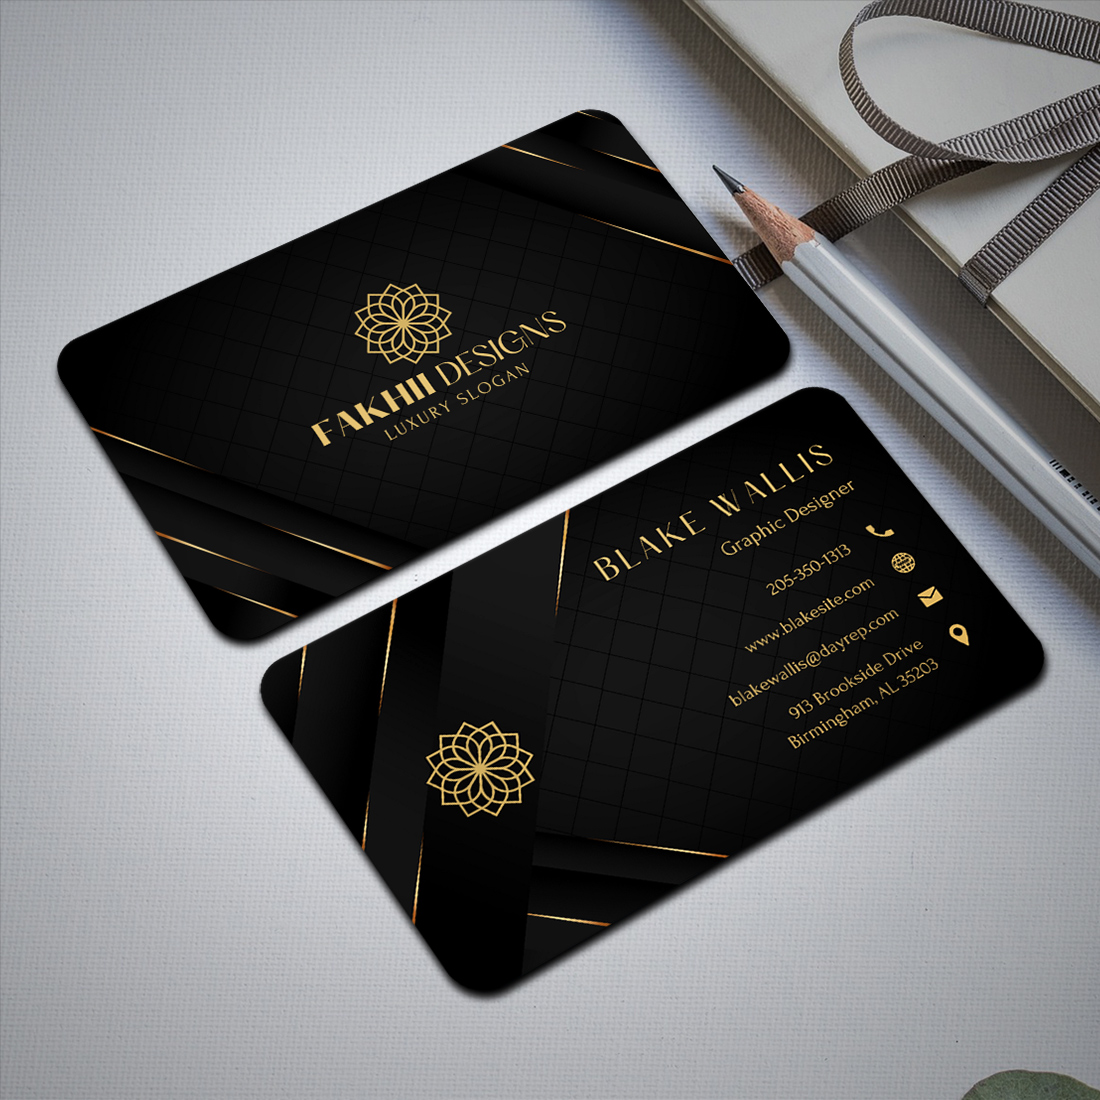 Black & Gold Modern Elegant Business Card Design | Aesthetic Editable Business Card | DIY Business Card | Canva Templates | Canva Business Cards Template | Business Card Template preview image.